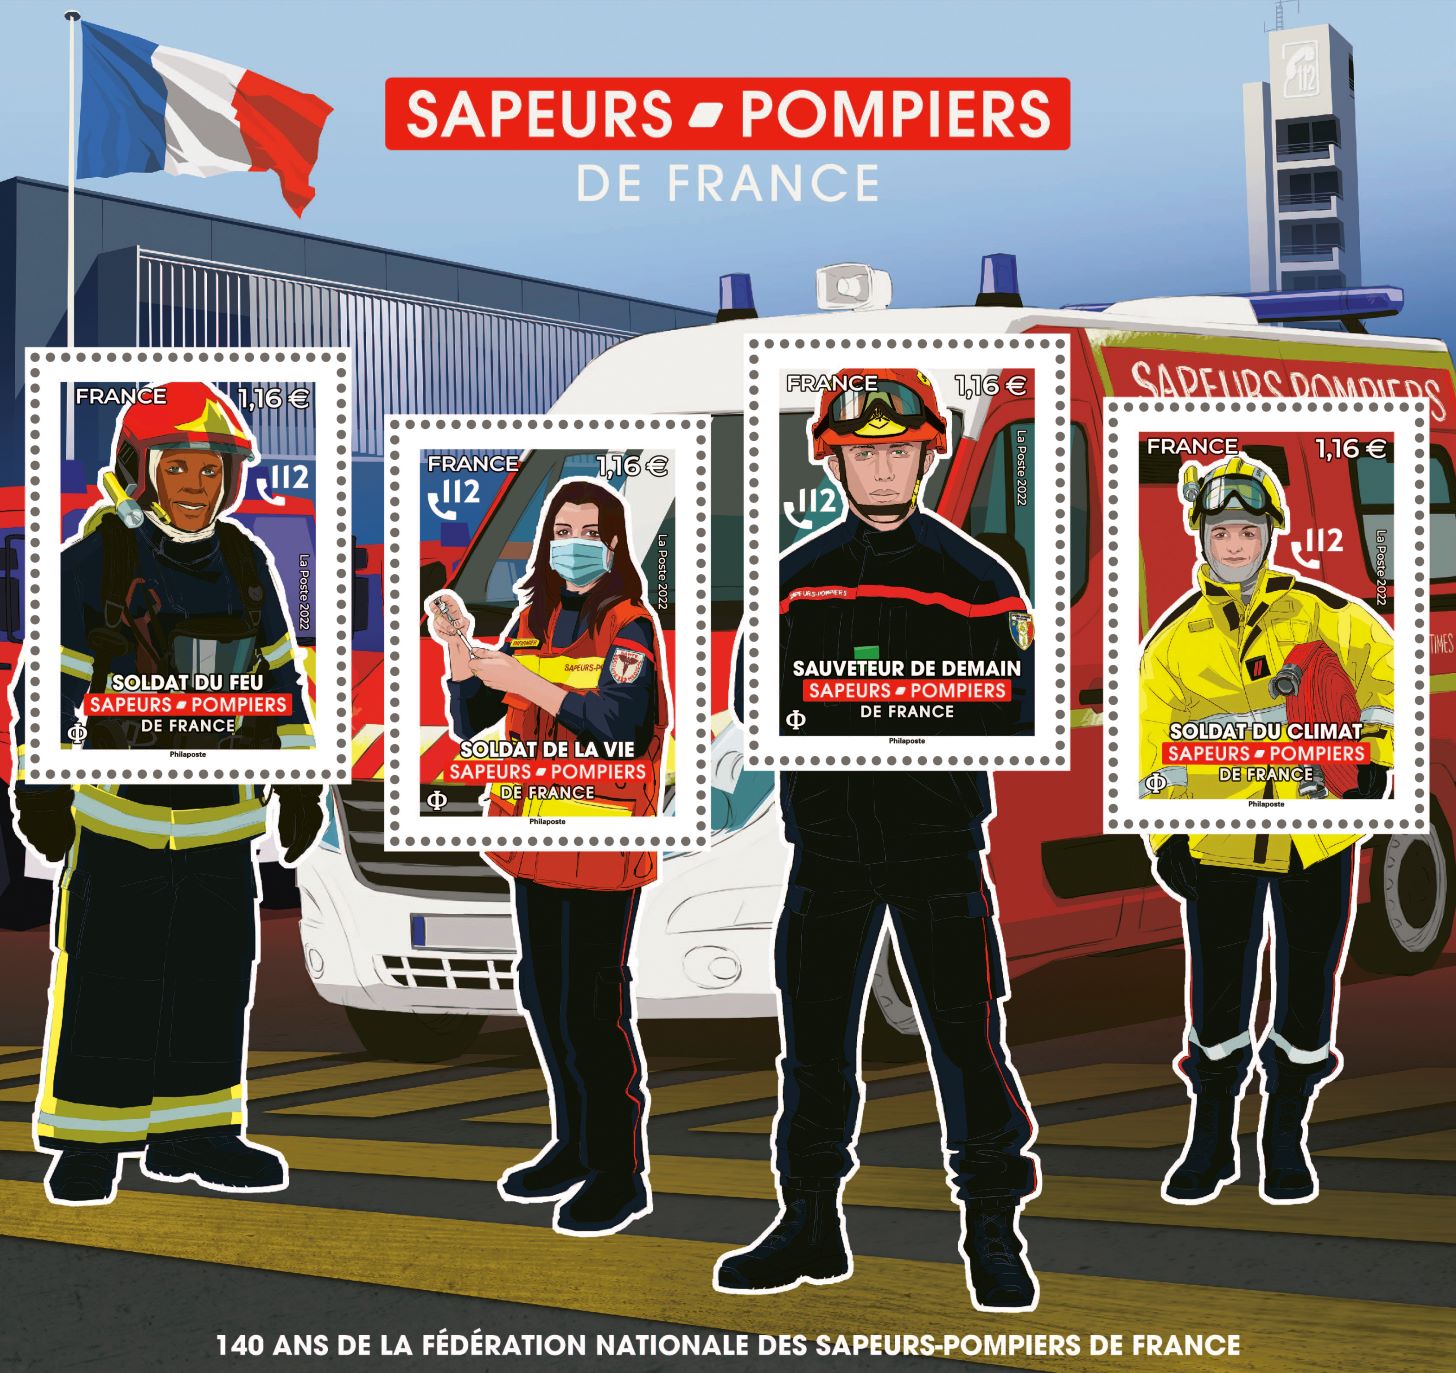 SAPEURS-POMPIERS DE FRANCE